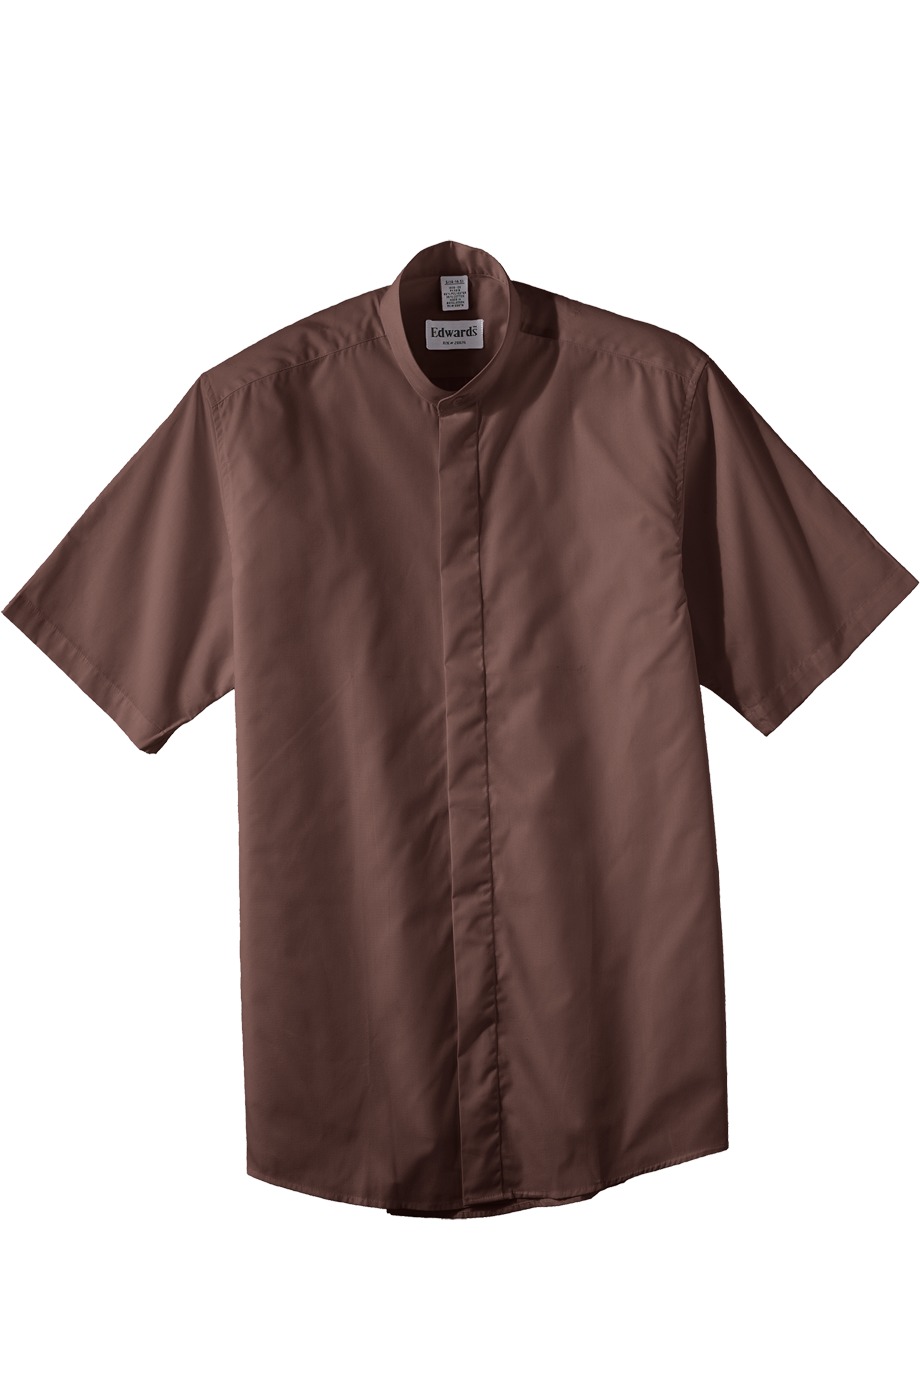 Edwards Garment 1346 男士短袖衬衣T恤